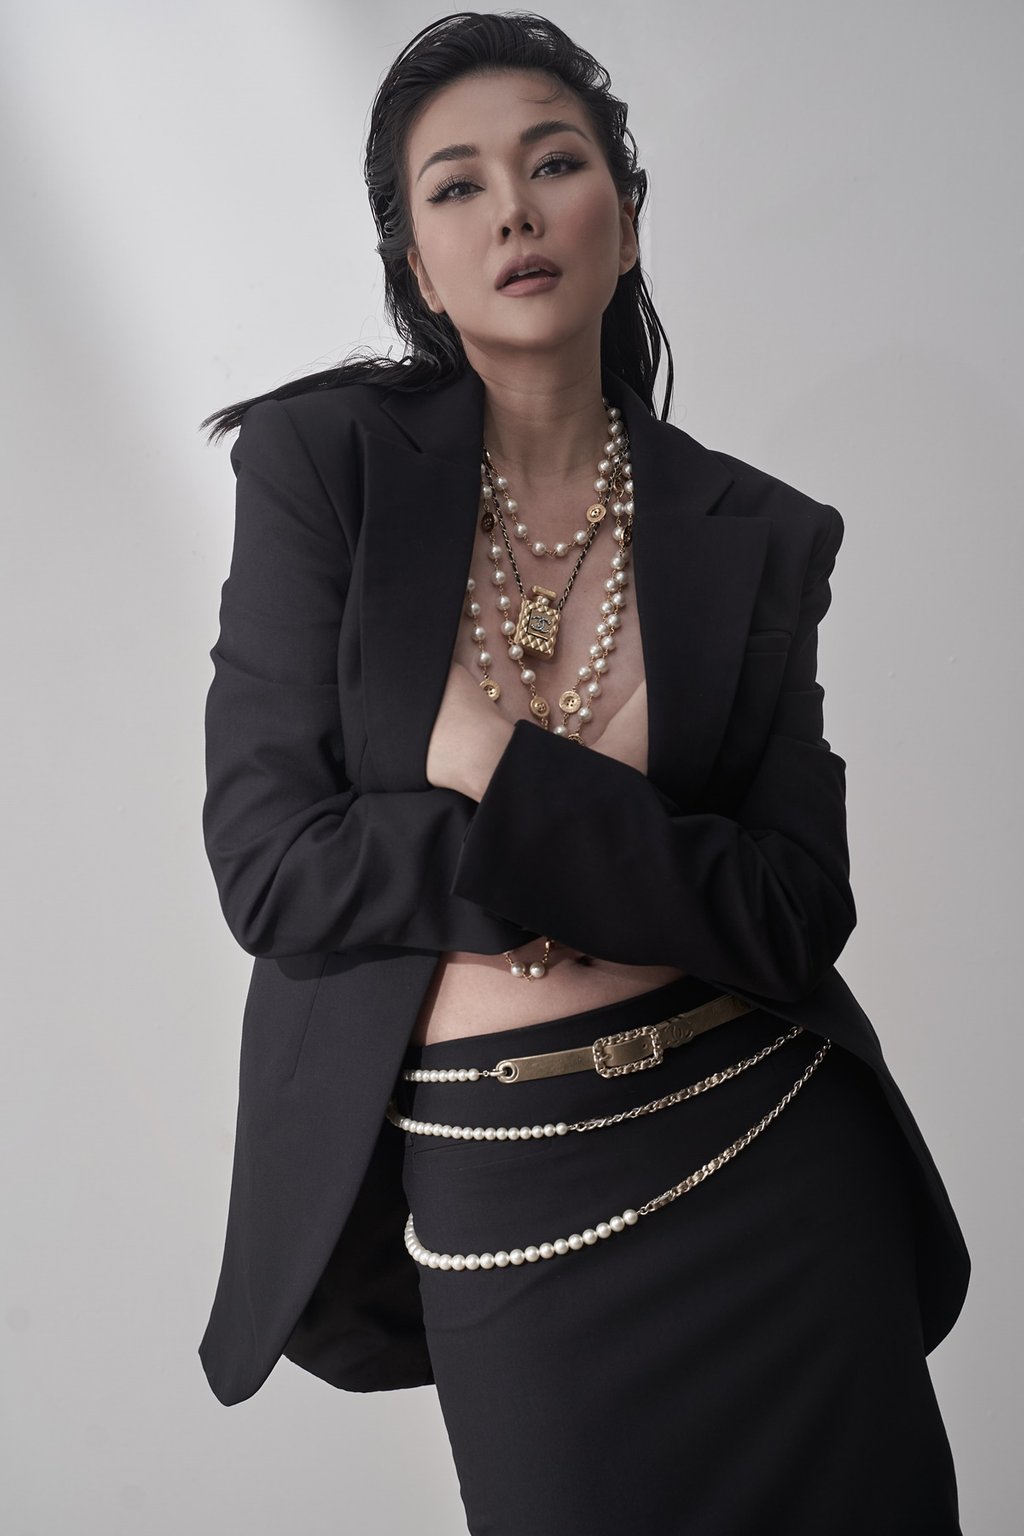 Việc kết hợp với những phụ kiện như trang sức Chanel, đồng hồ hàng hiệu 200 triệu đắt tiền càng tôn lên vẻ đẹp quý phái đẳng cấp của siêu mẫu Thanh Hằng.